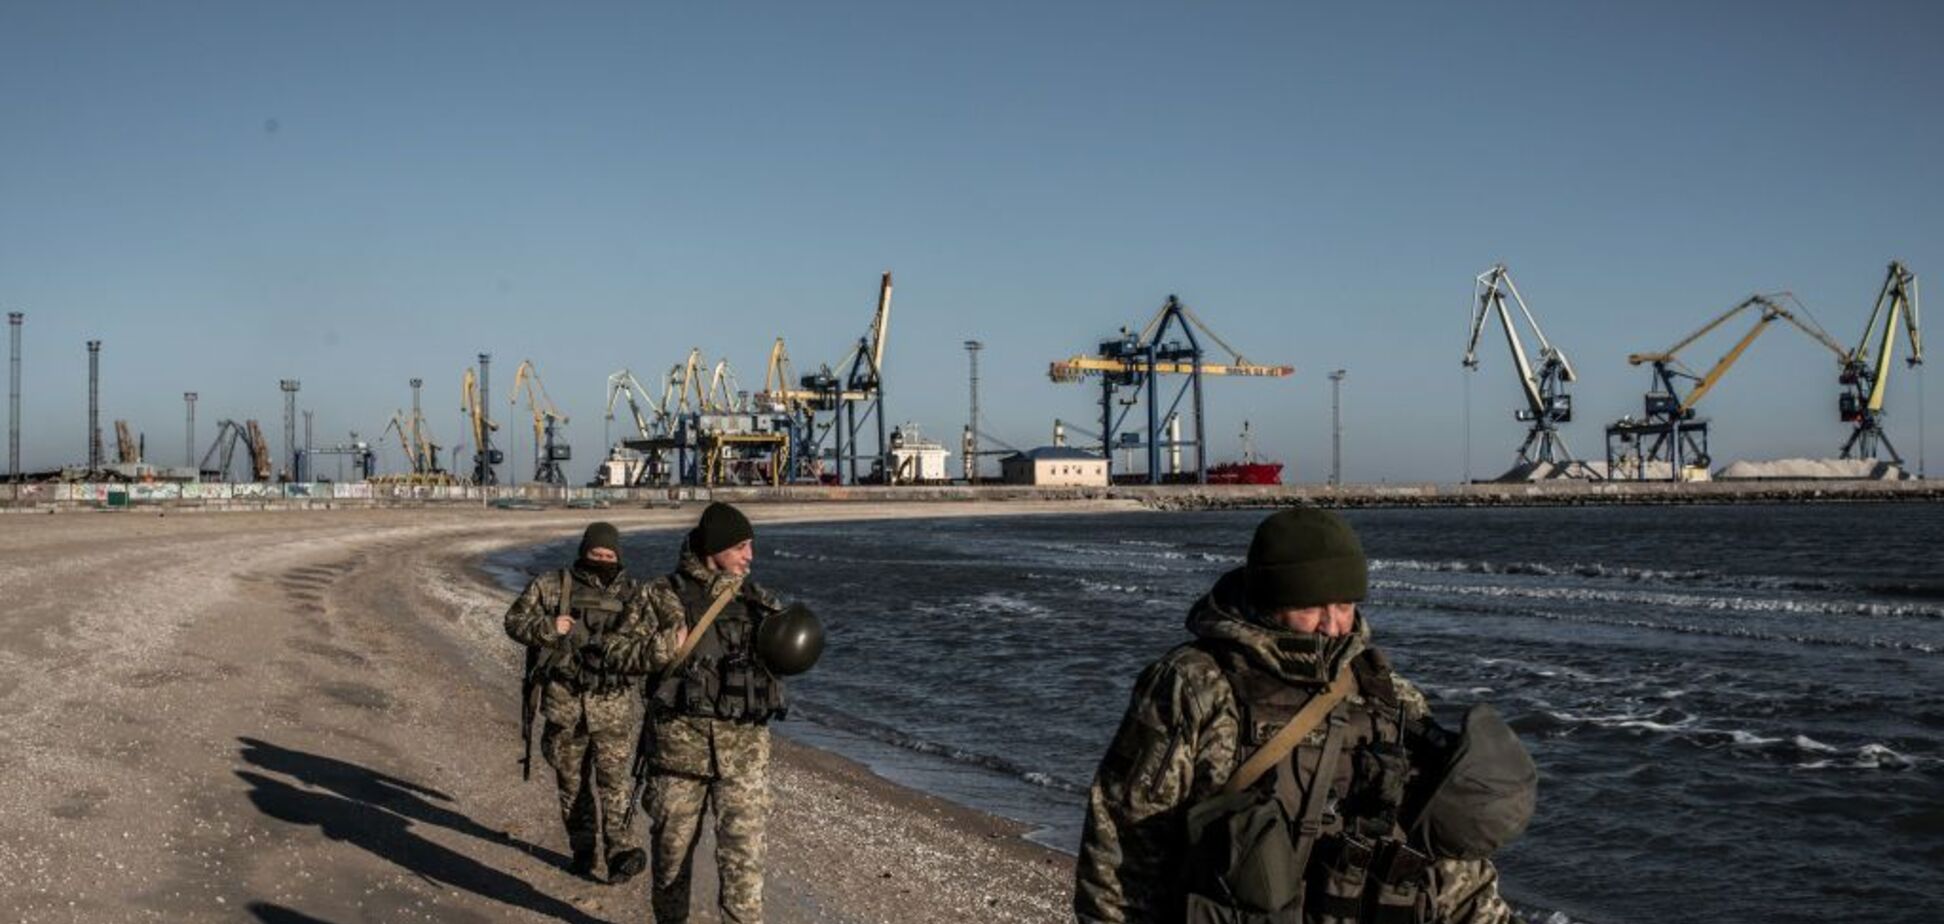 Цели блокирования Керченского пролива: шантаж и интервенция